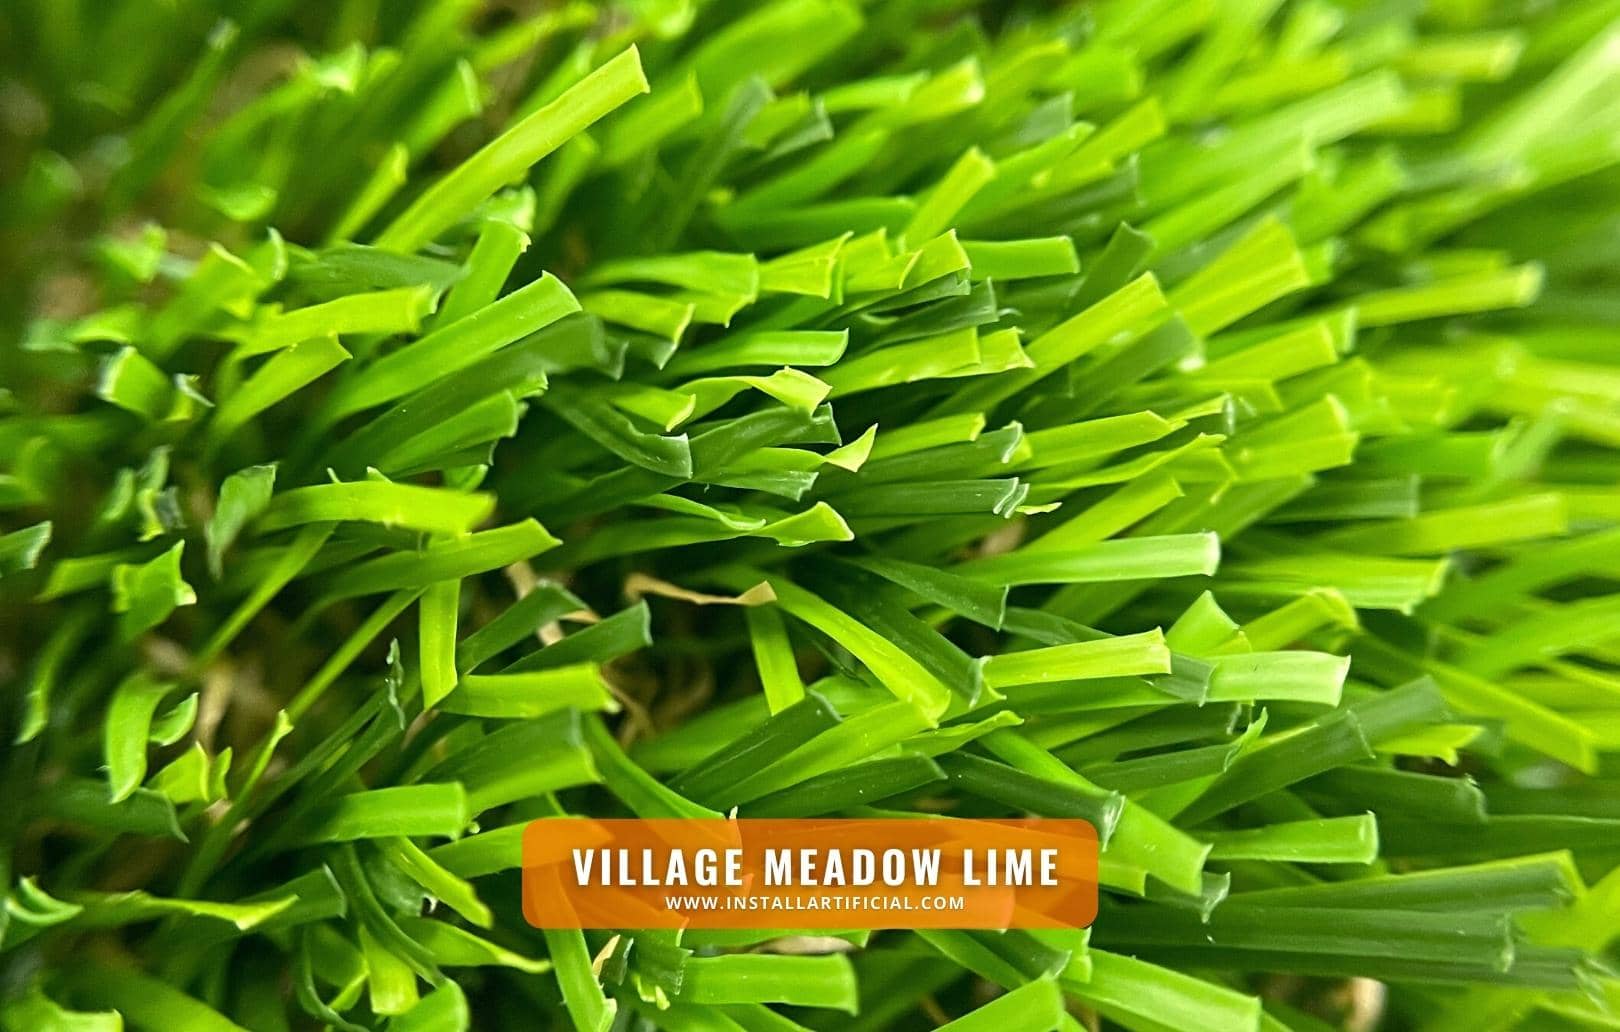 Village Meadow Lime, Shawgrass, macro